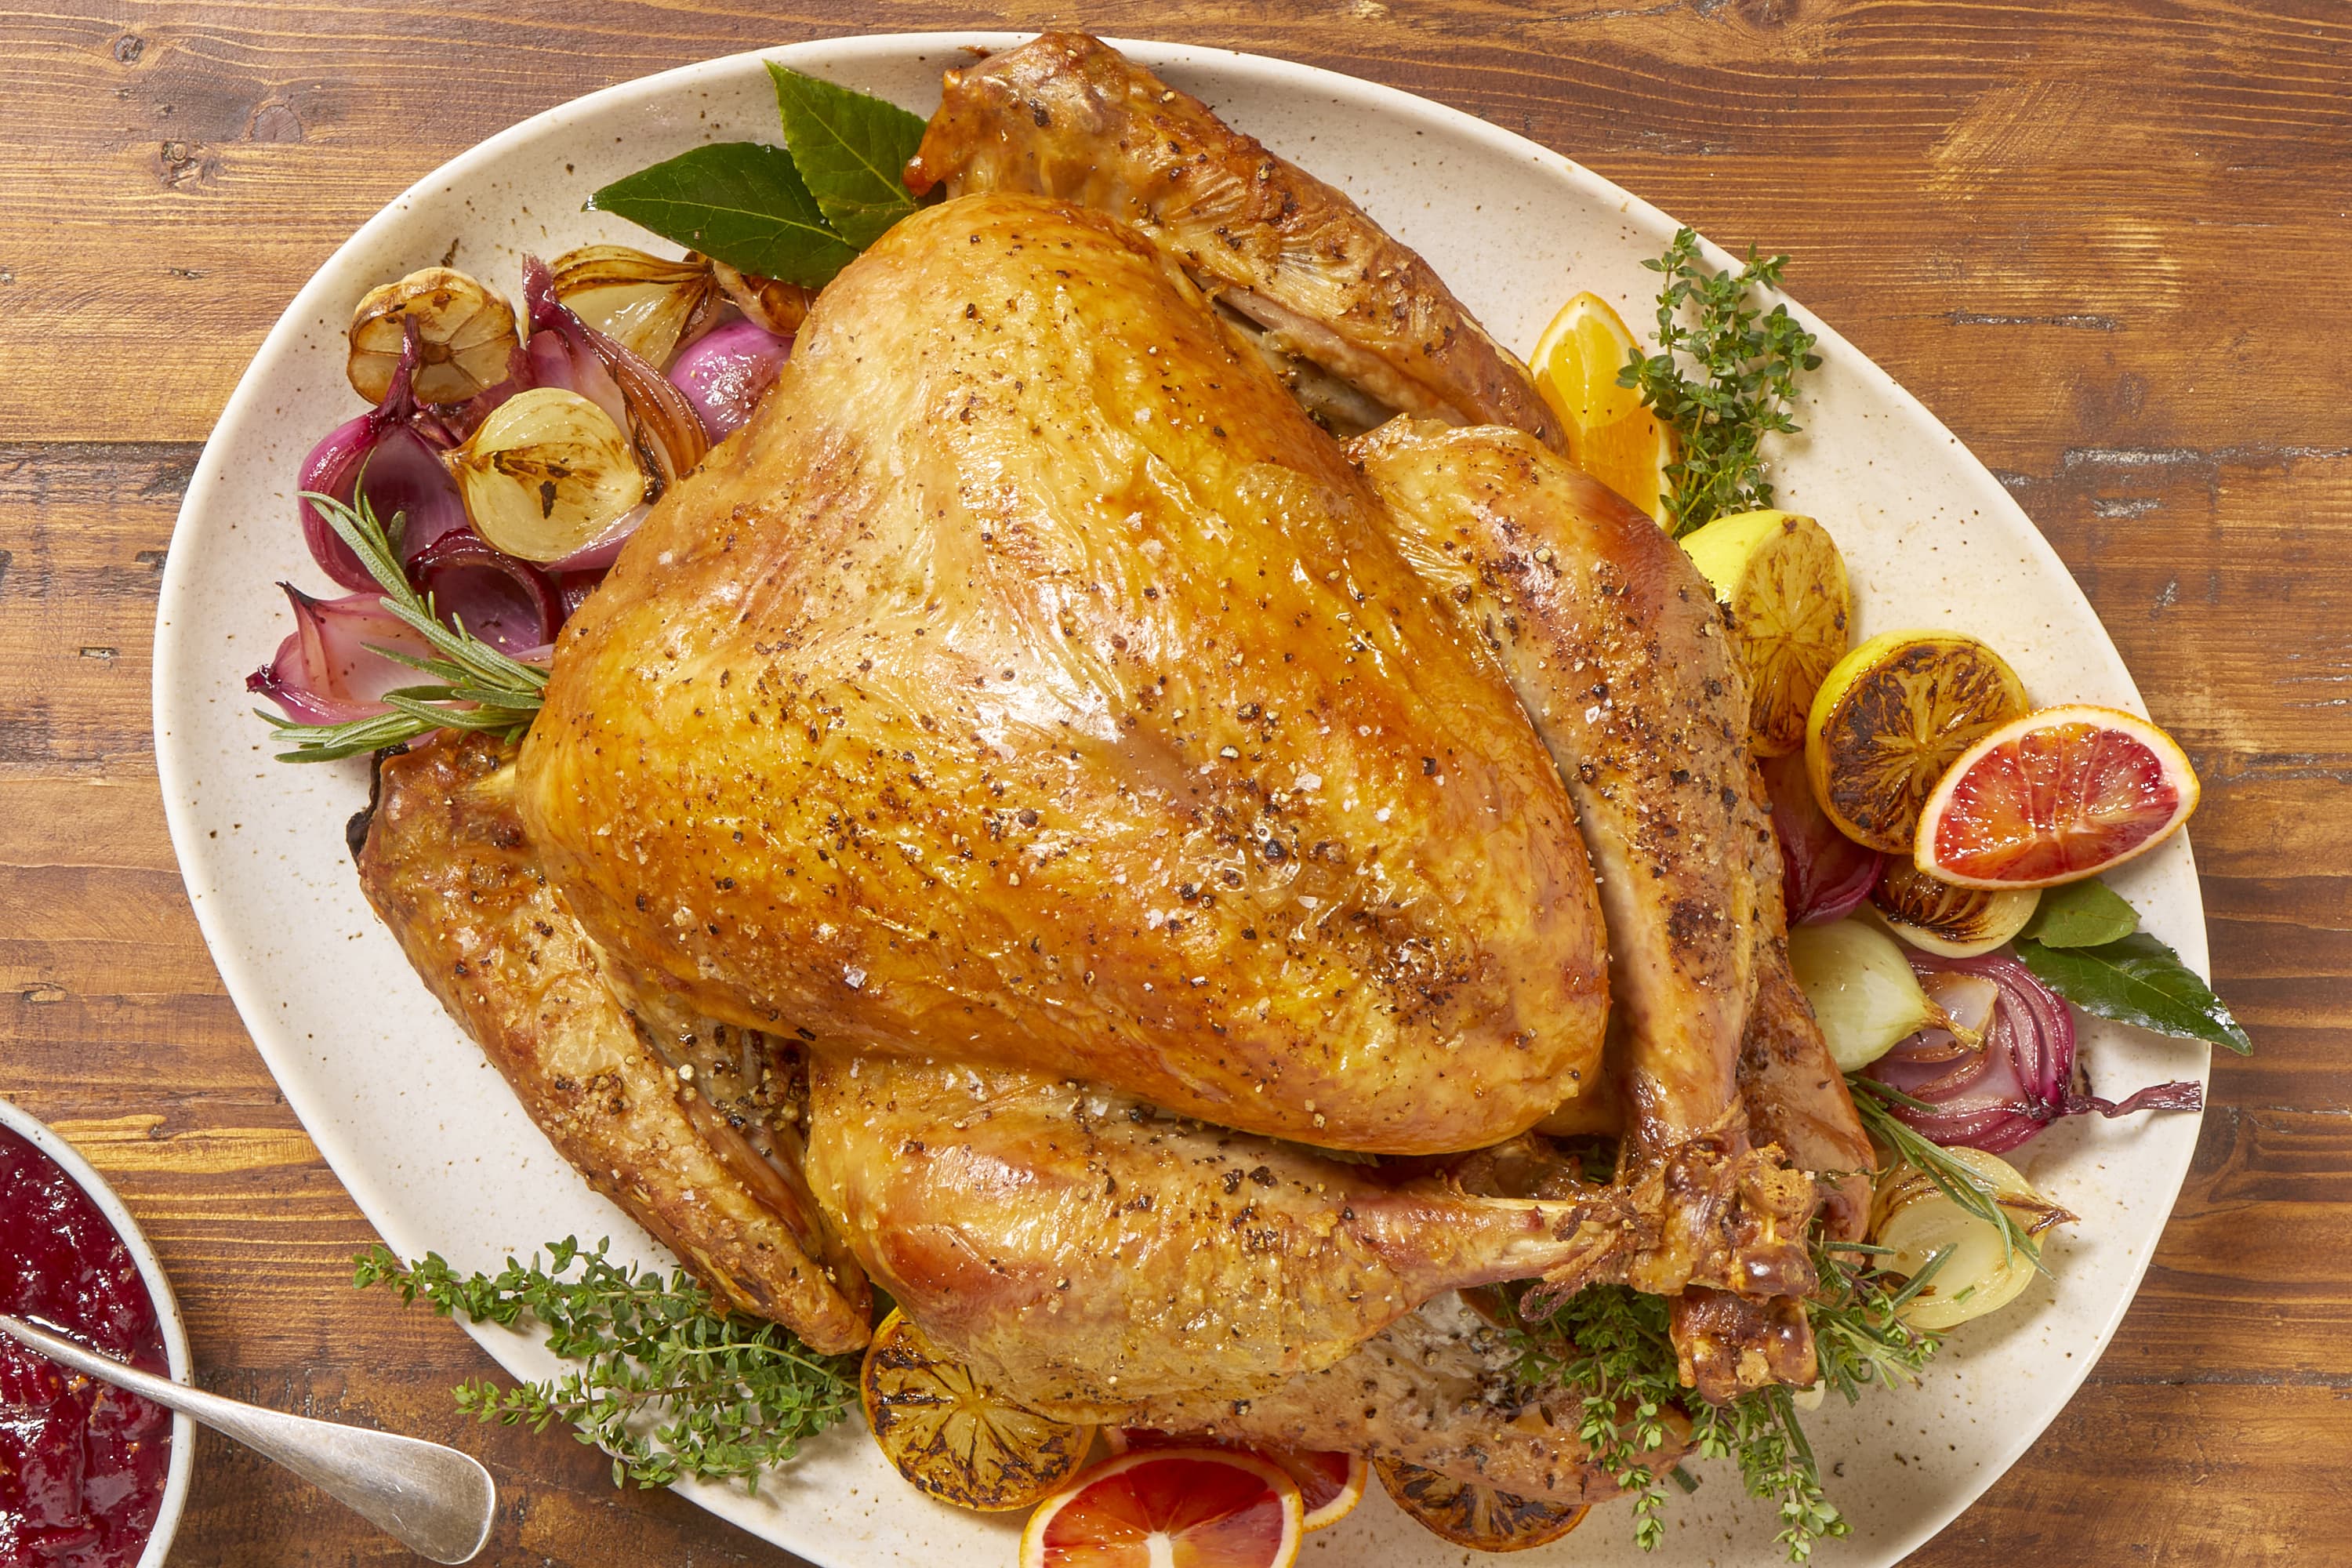 Thanksgiving Turkey Timeline: When to Thaw, Brine & Cook